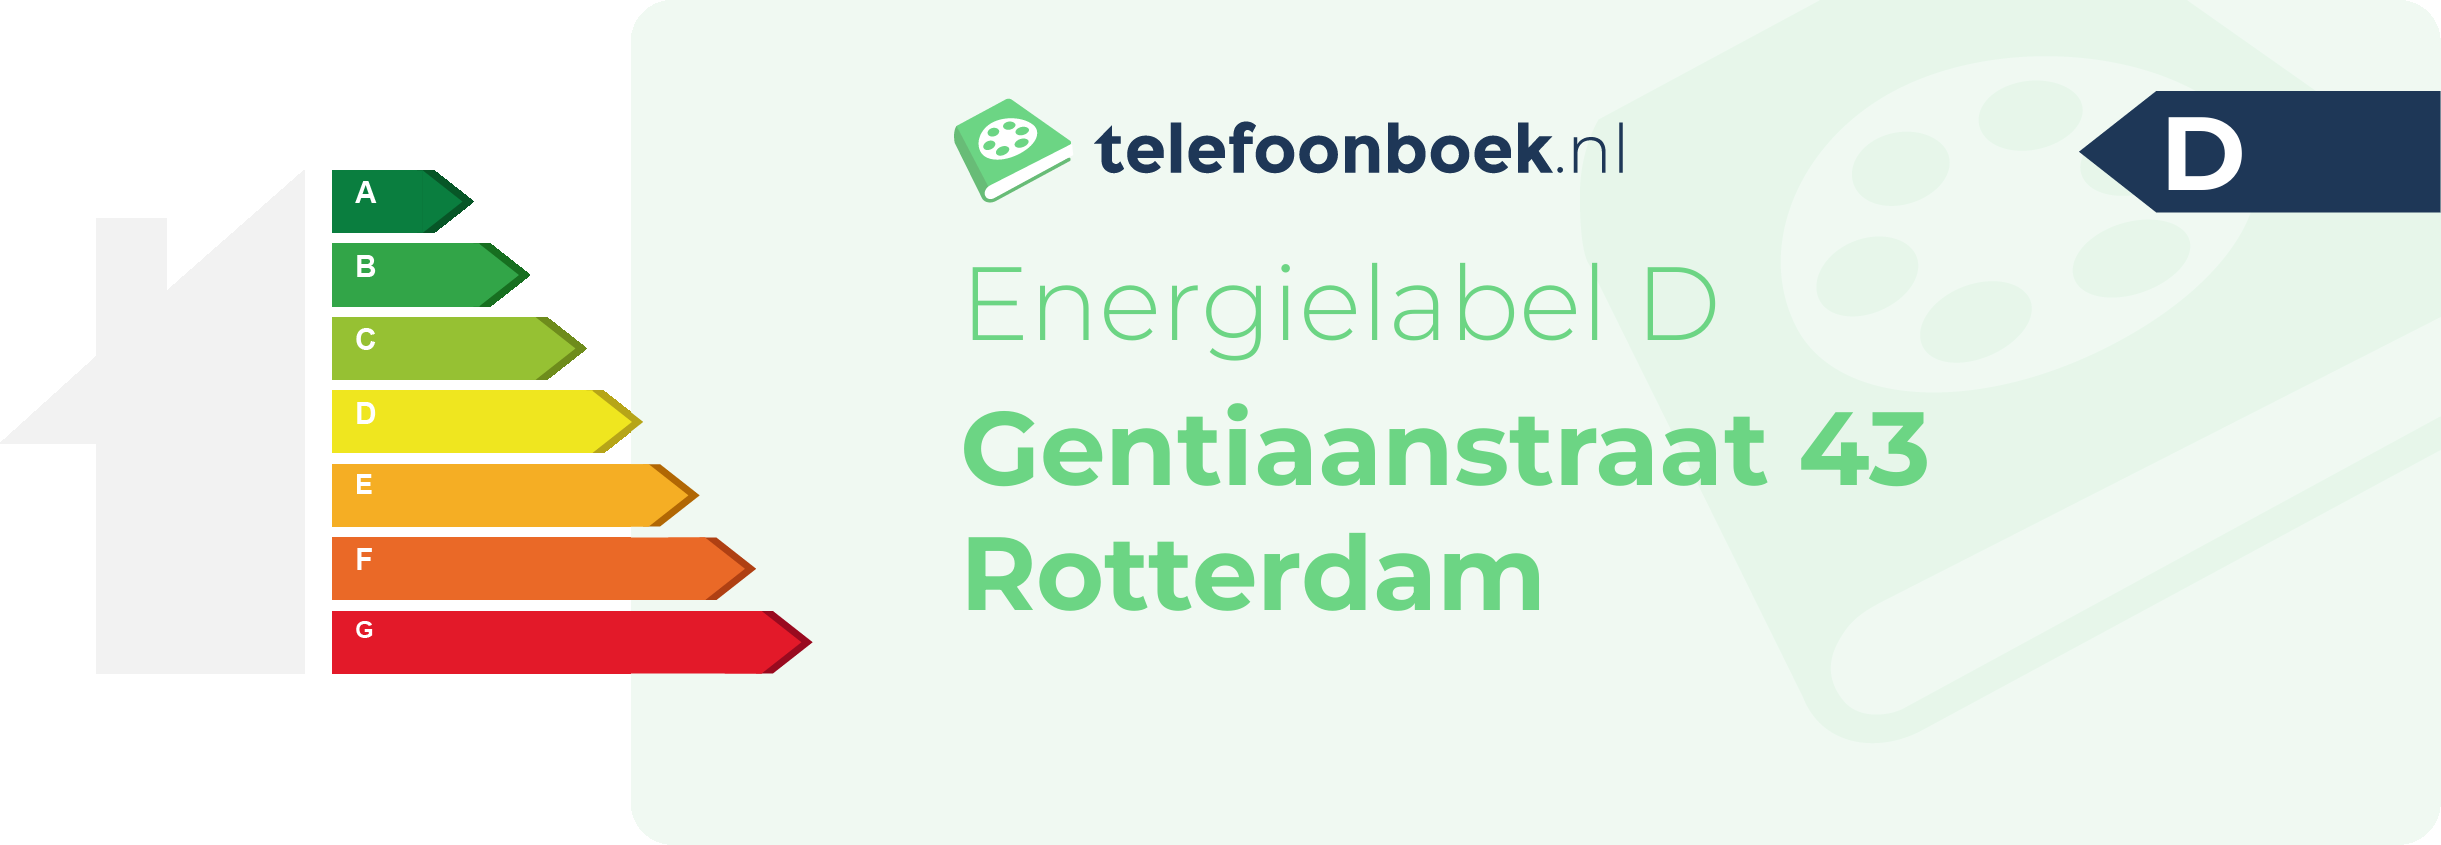 Energielabel Gentiaanstraat 43 Rotterdam